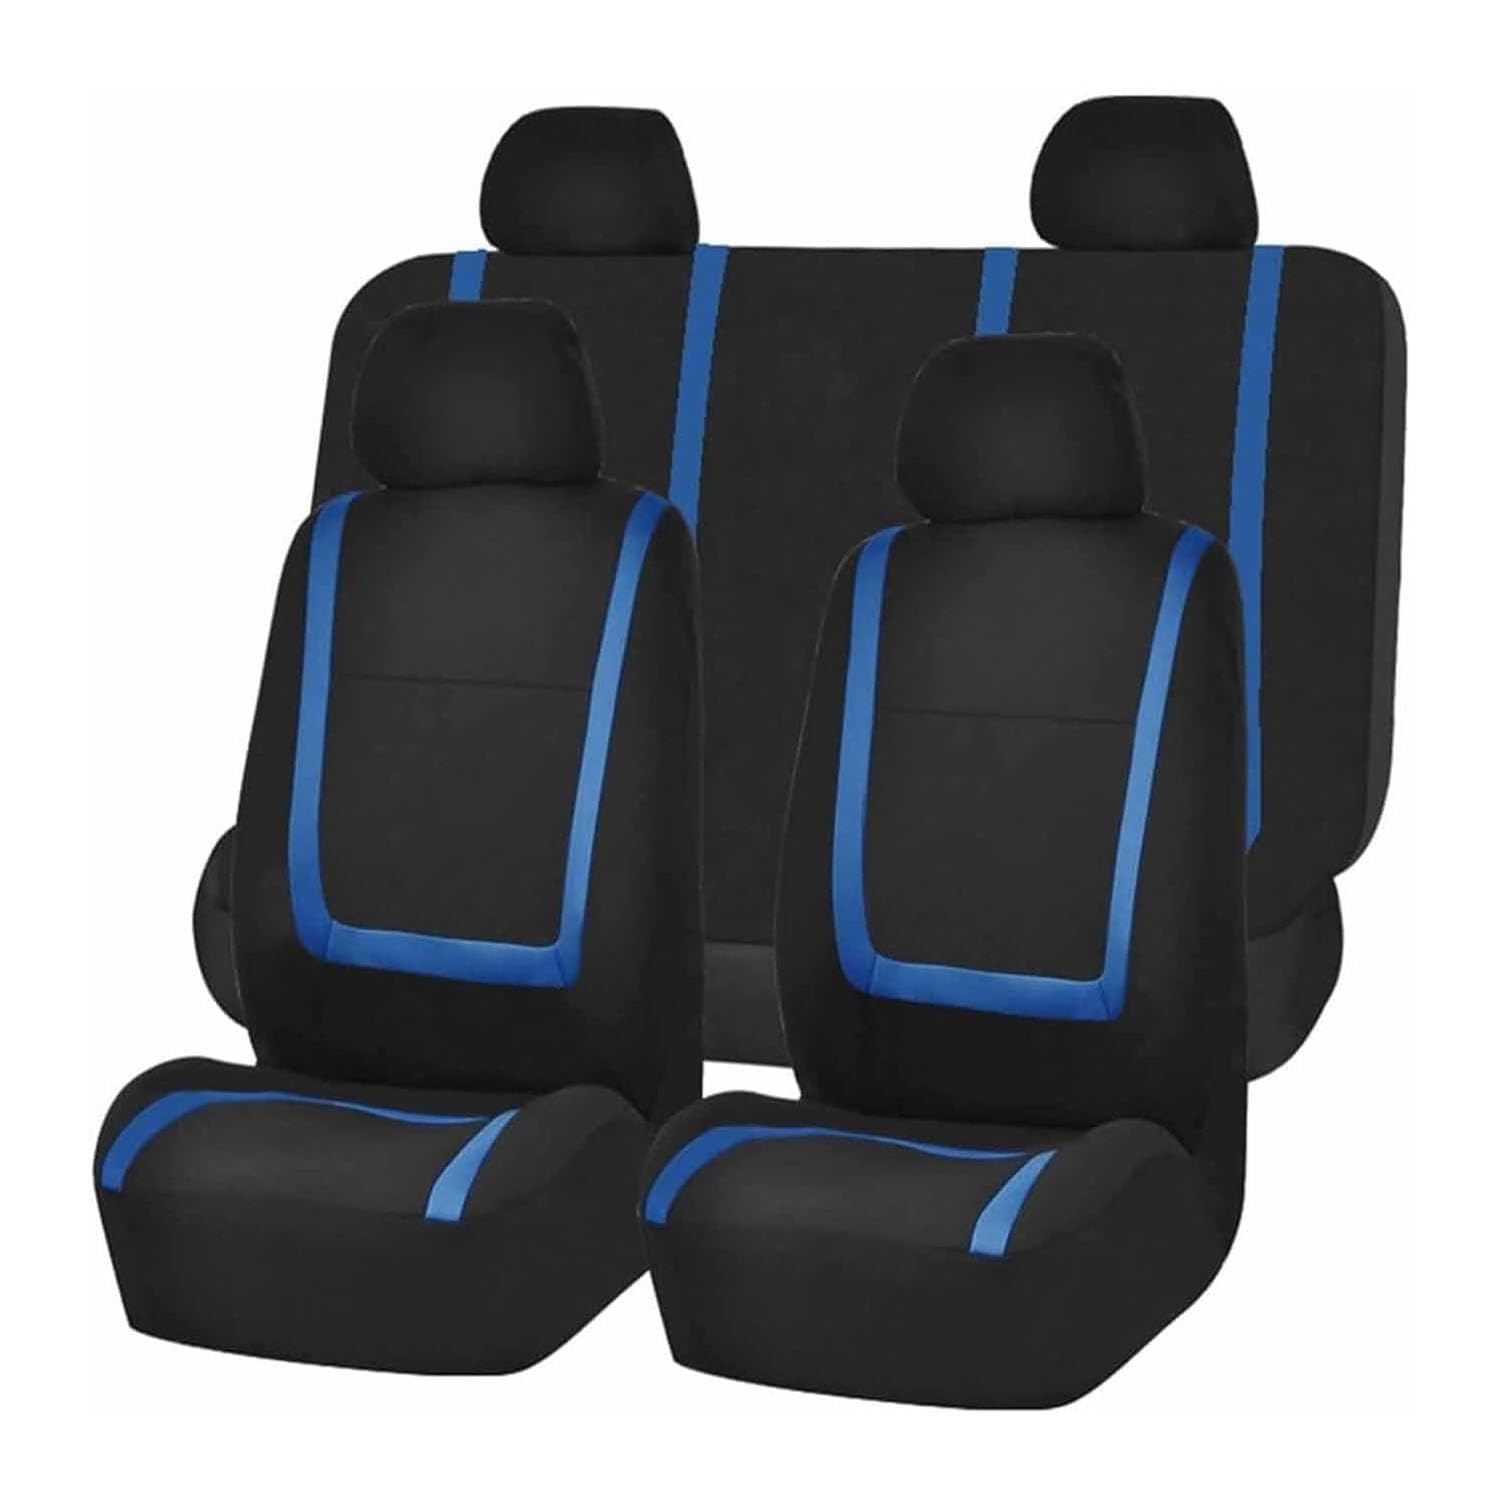 VewZJJ Auto Sitzbezügesets für Skoda Rapid/Citigo,Komfortabler Atmungsaktiv Sitzschoner Satz Sitzbezug,rutschfest Wasserdichter Vorne RüCkbank Autositz SitzbezüGe,Black-Blue von VewZJJ